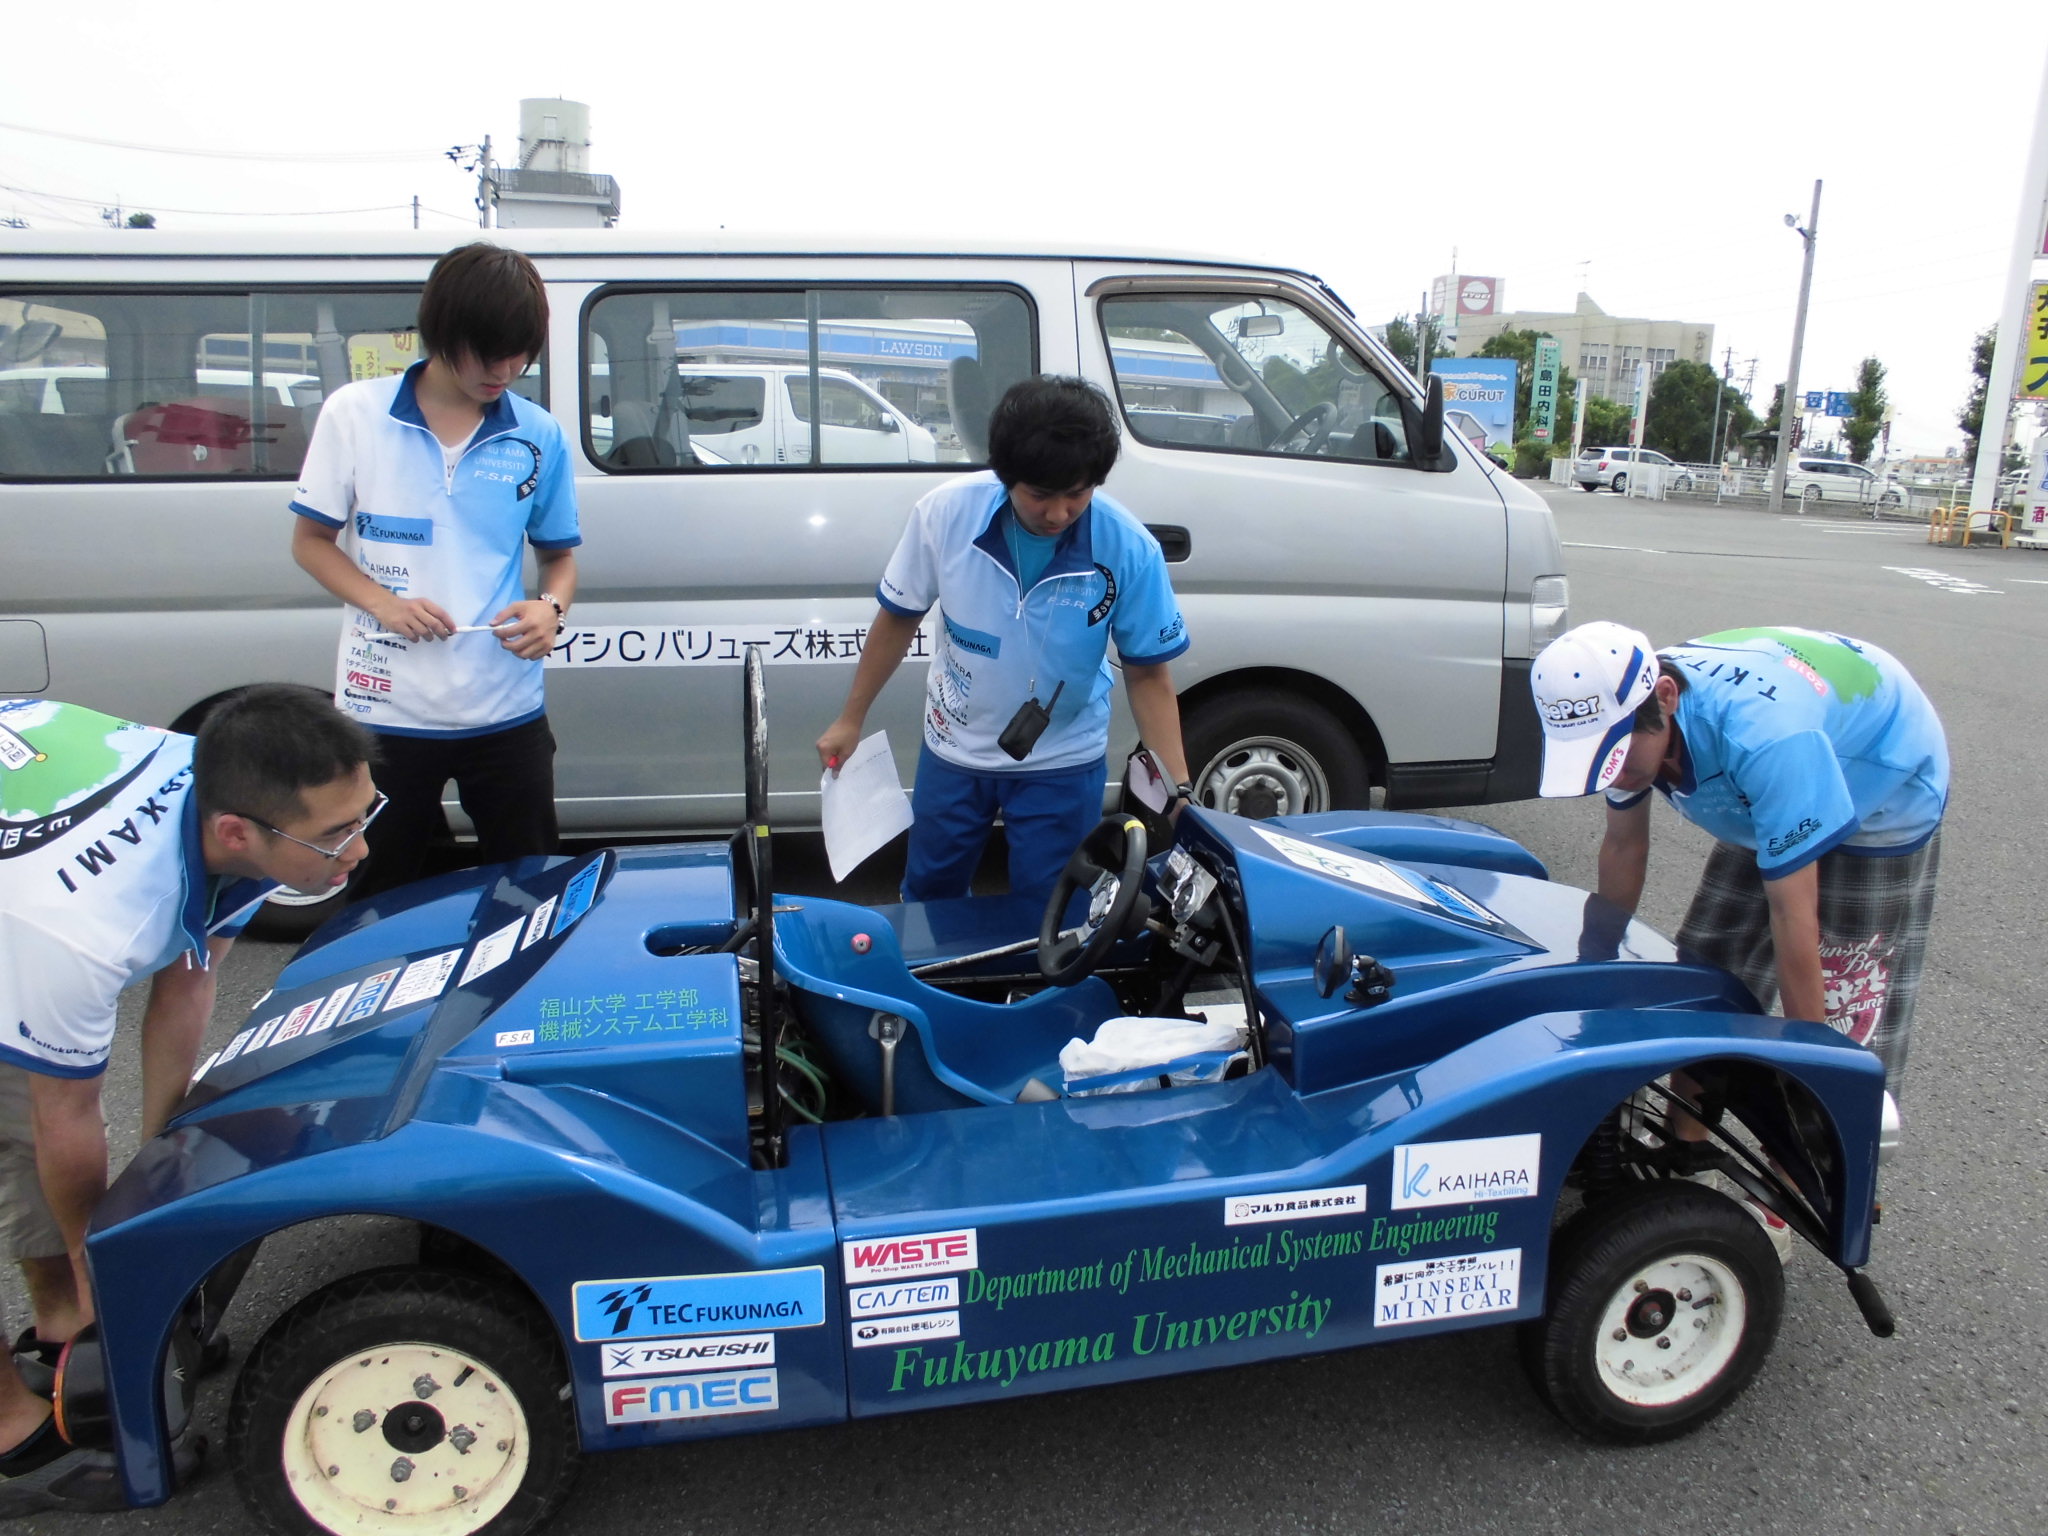 ツネイシCバリューズが福山大学EV学生製作プロジェクトを支援。電気自動車で1,000km走破「EV四国一周プロジェクト2015」に挑戦